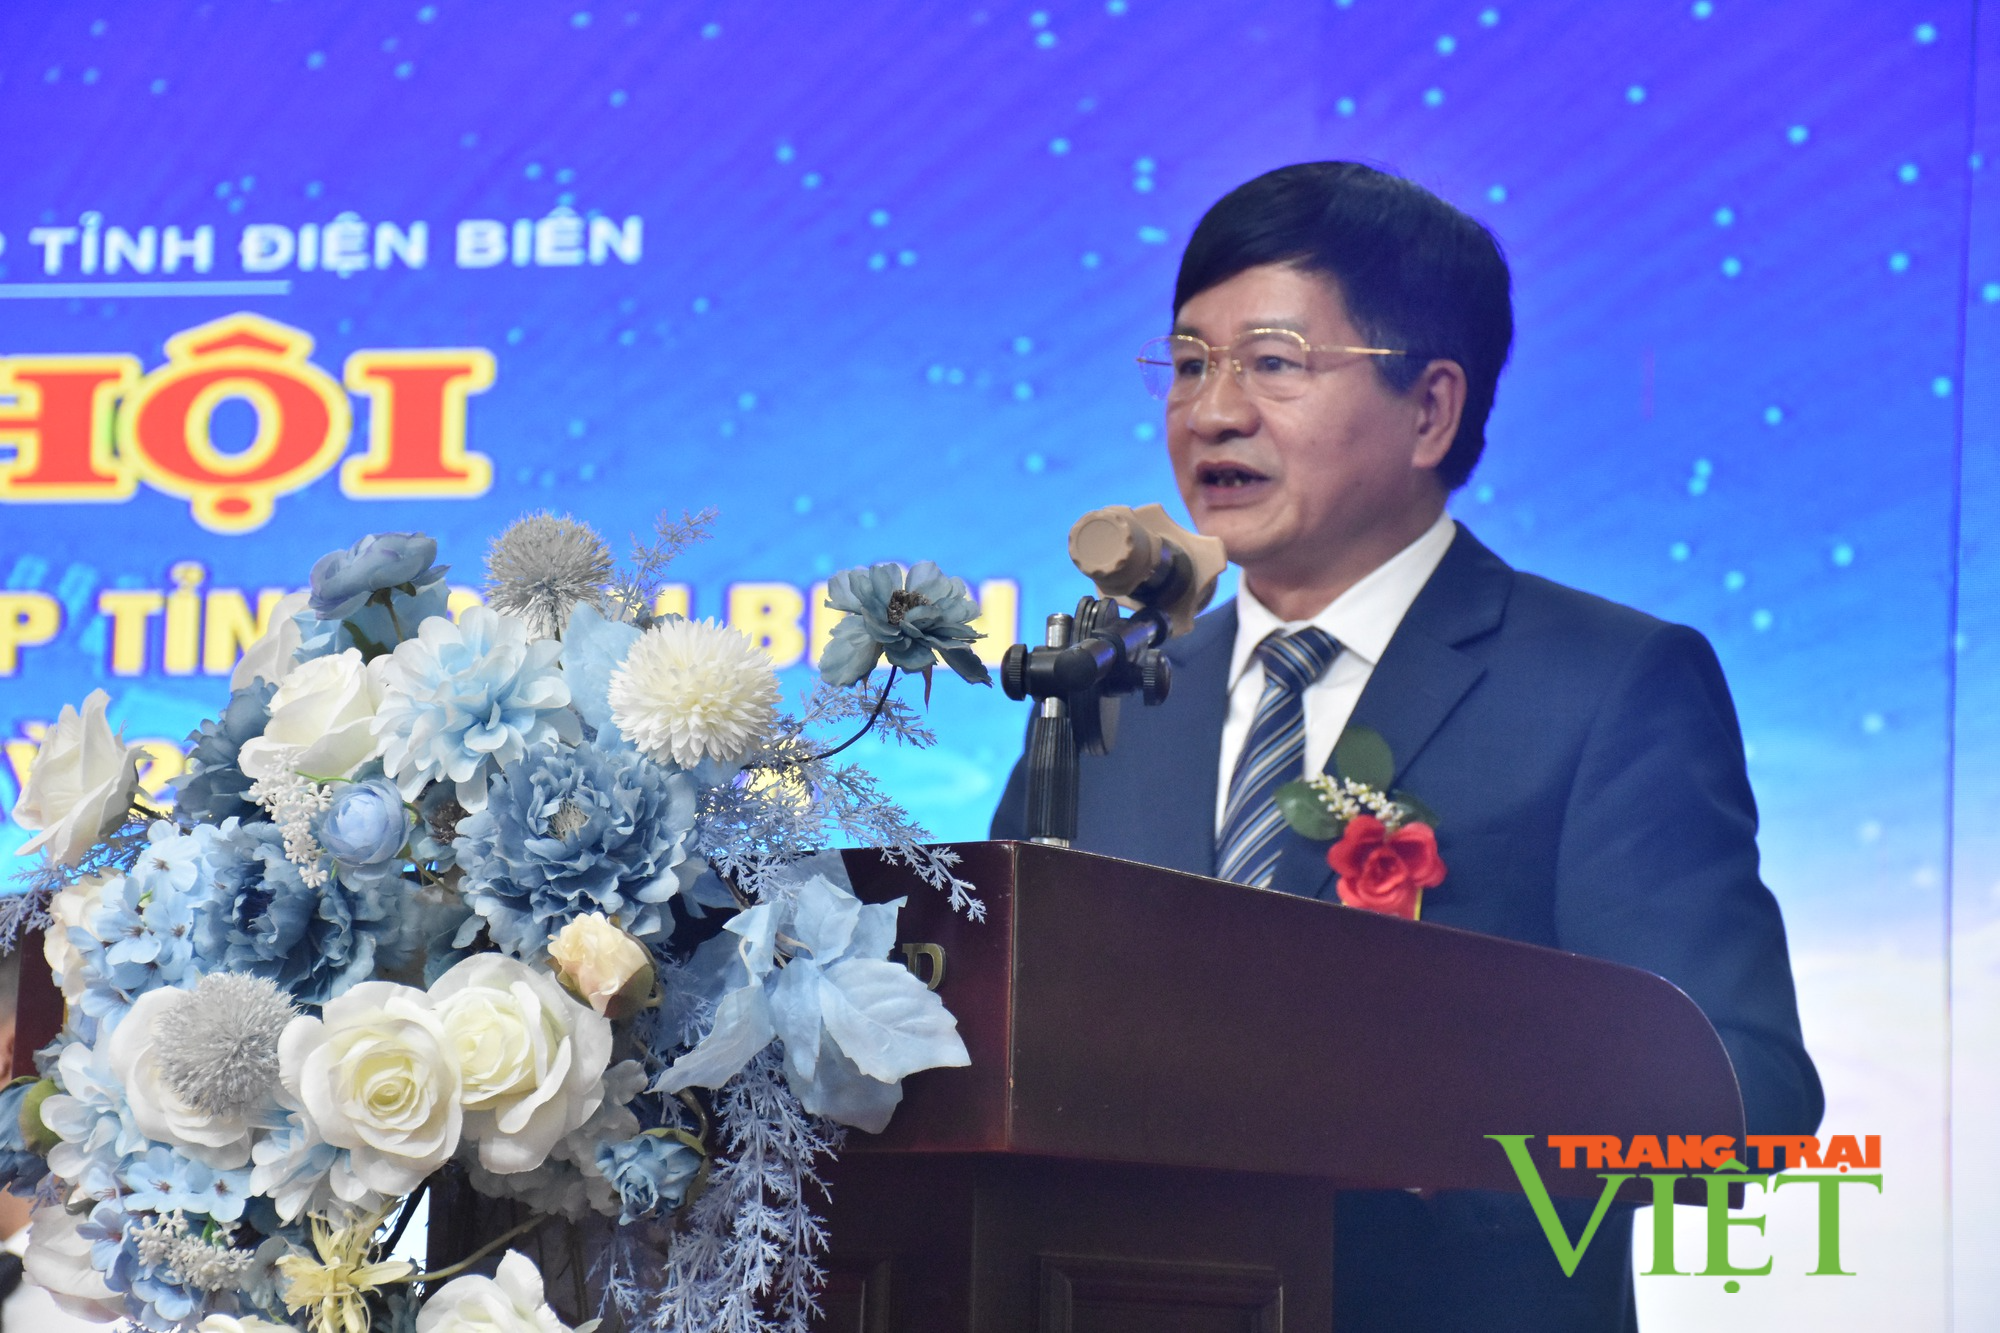 Hiệp hội Doanh nghiệp tỉnh Điện Biên làm tốt vai trò cầu nối doanh nghiệp - chính quyền - Ảnh 1.